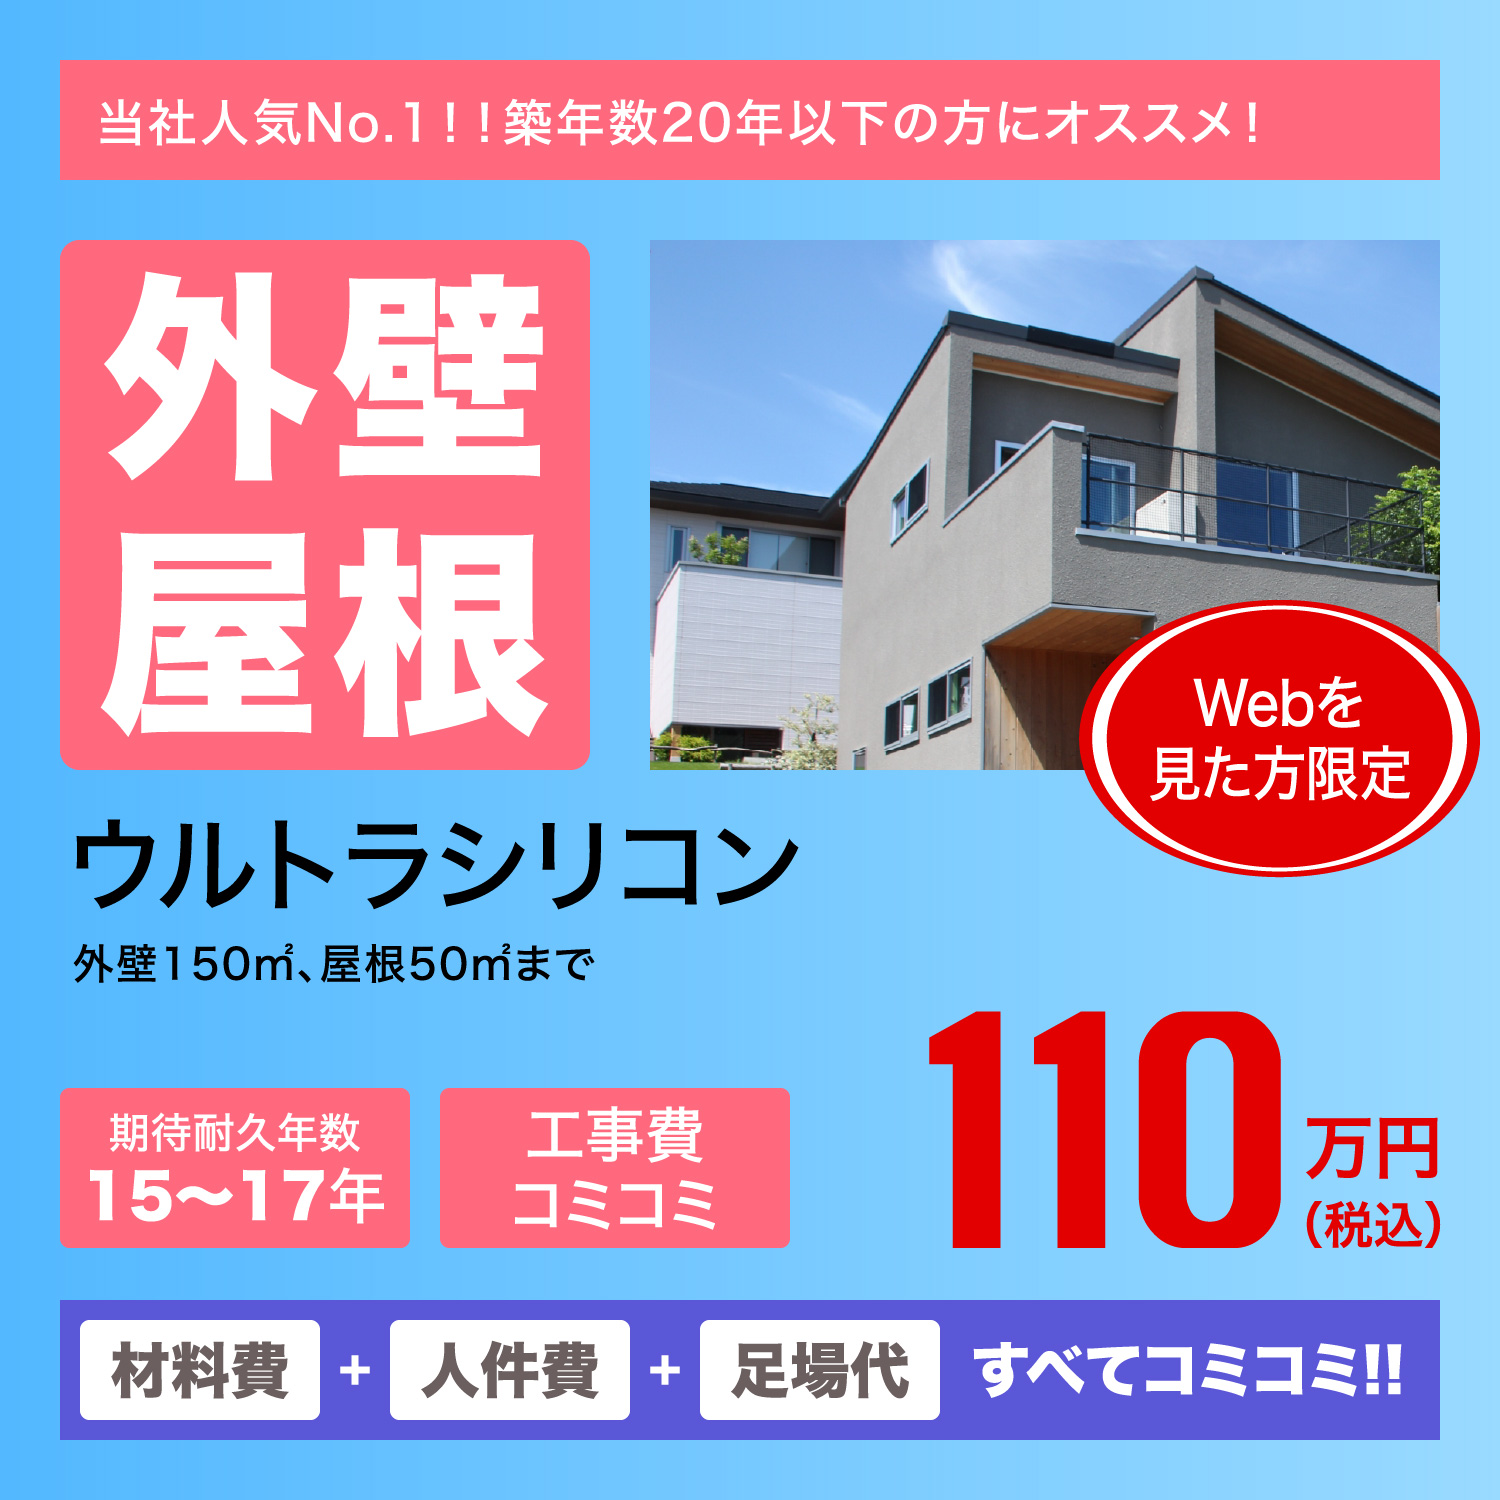 外壁屋根　ウルトラシリコン　110万円(税込)